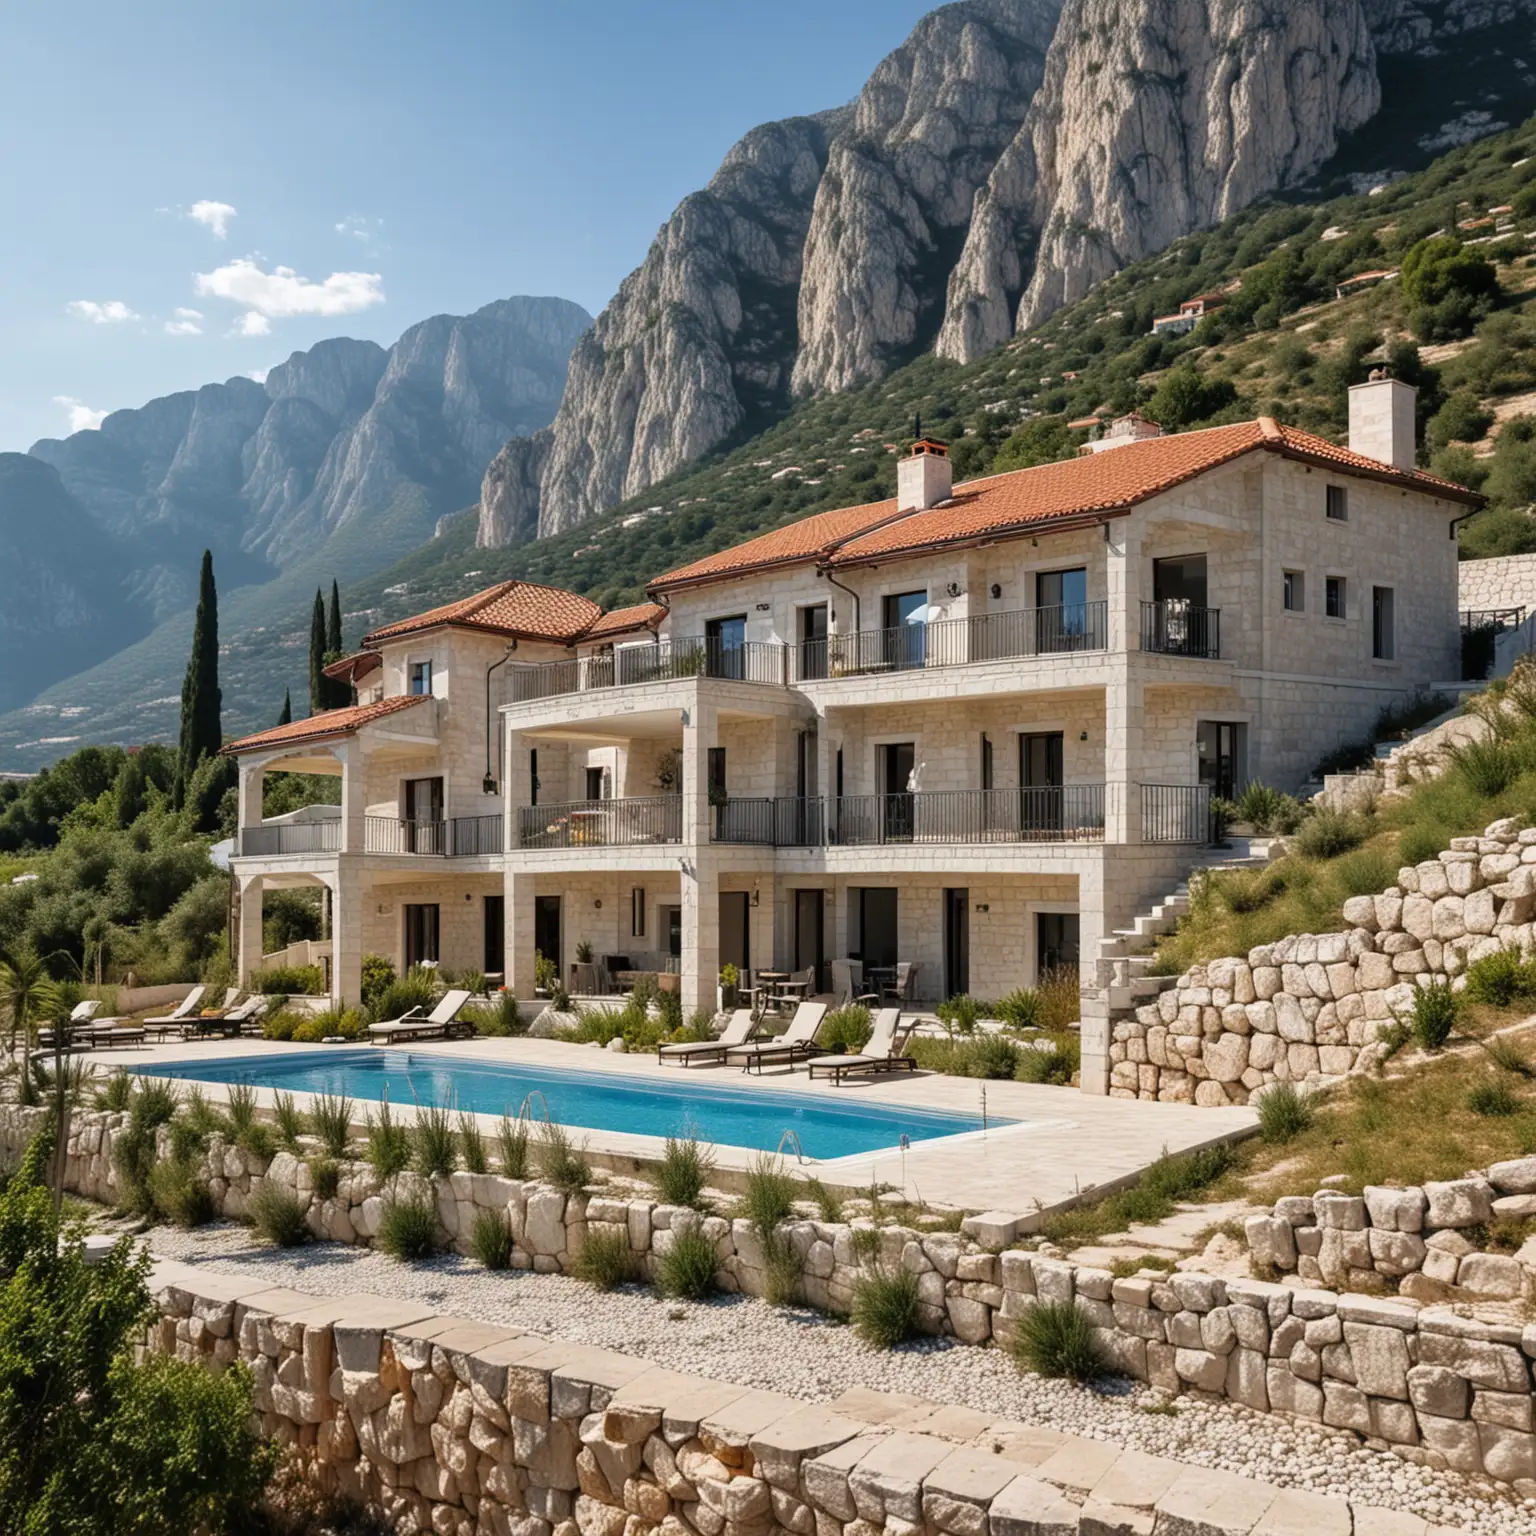 Erstelle ein Bild auf dem schöne Fertighäuser mit jeweils 2 Parkplätzen und einem Pool umgeben von einem schönen Garten zu sehen sind auf einer Fläche von 20x25 m2 in Montenegro Stari Bar, mediterran, mittelalterlich, edel, Limestone, im Hintergrund ein Berg